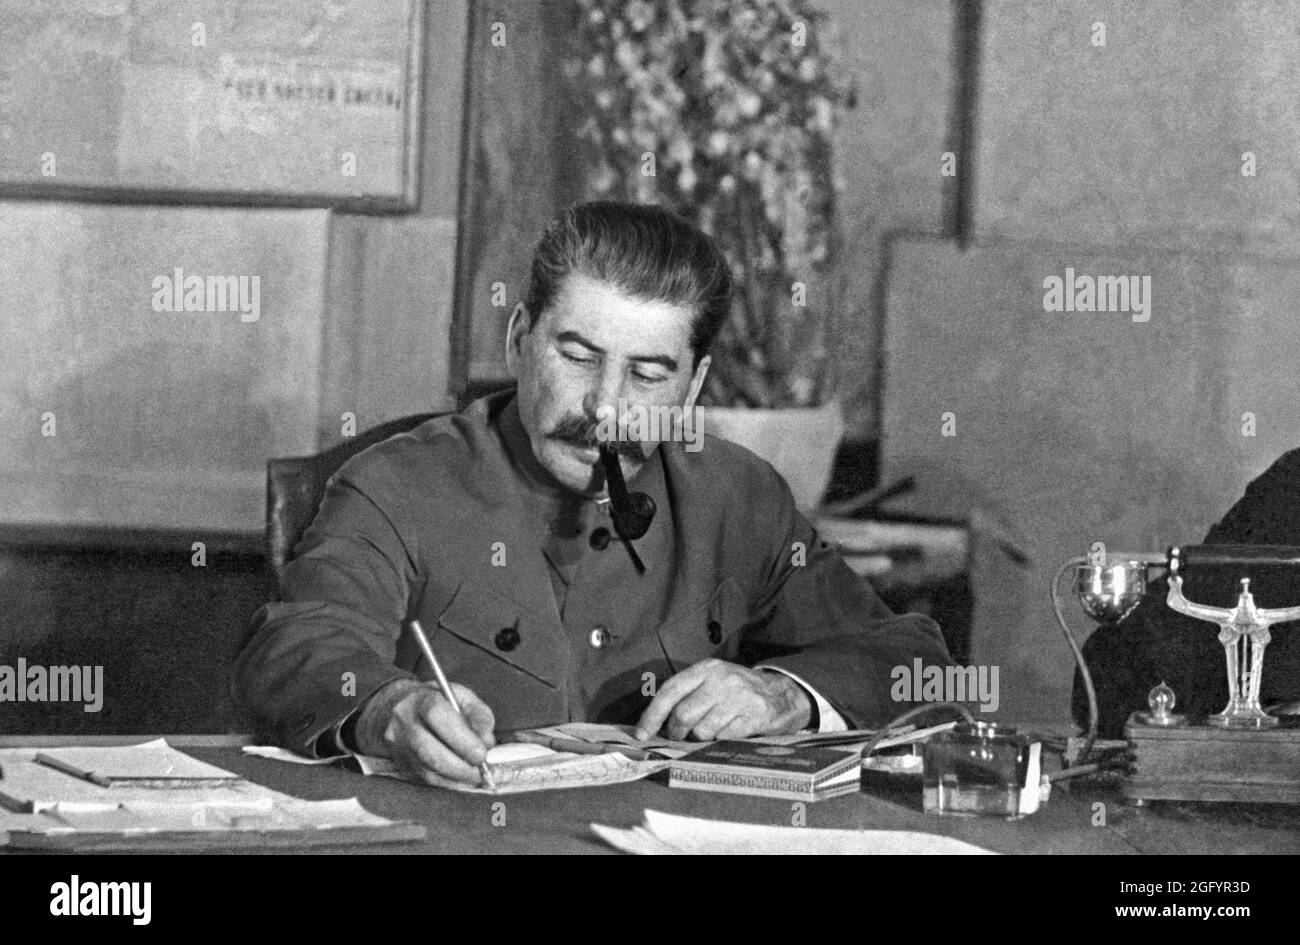 Joseph Staline, avec sa pipe, écrivant à un bureau lors d'une conférence au Kremlin, Moscou, mars 1935. Il écrit avec son crayon couleur de marque avec lequel il a tout écrit. Banque D'Images